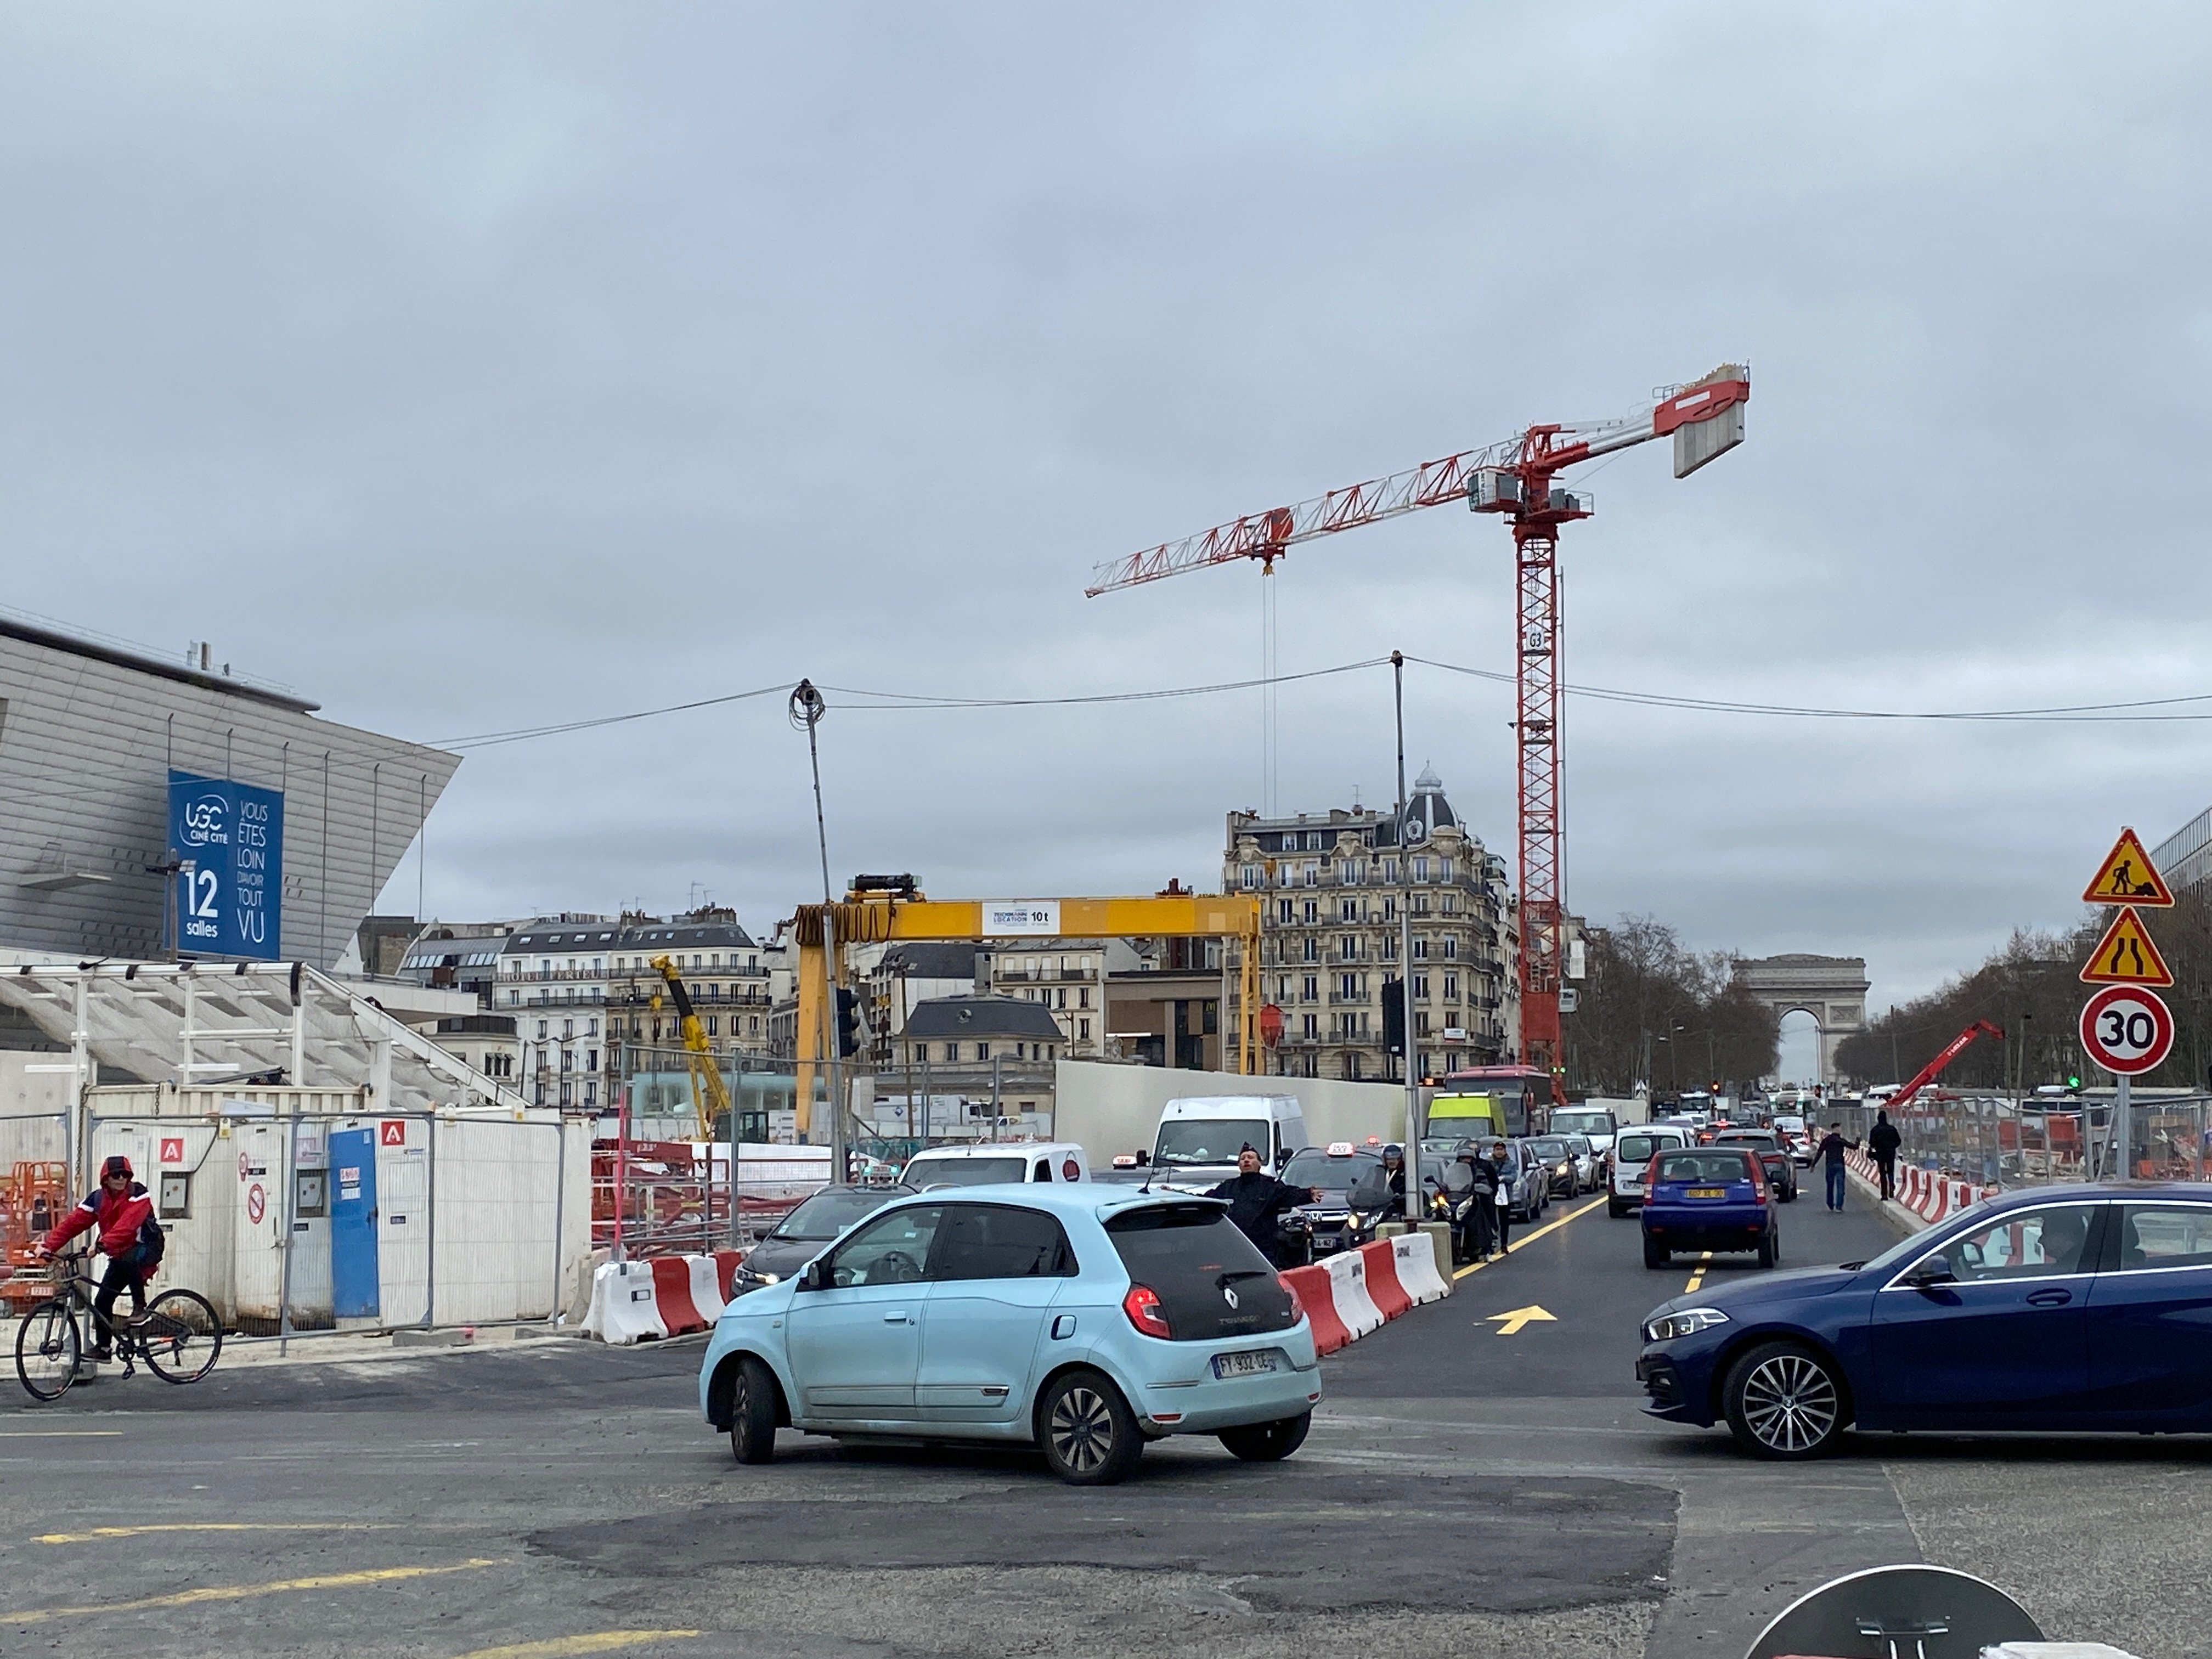 Paris (XVIe-XVIIe), le 17 février. La circulation a été rétablie en ligne droite au centre de la place Maillot, où le chantier Eole commence à libérer les emprises. LP/Sébastian Compagnon